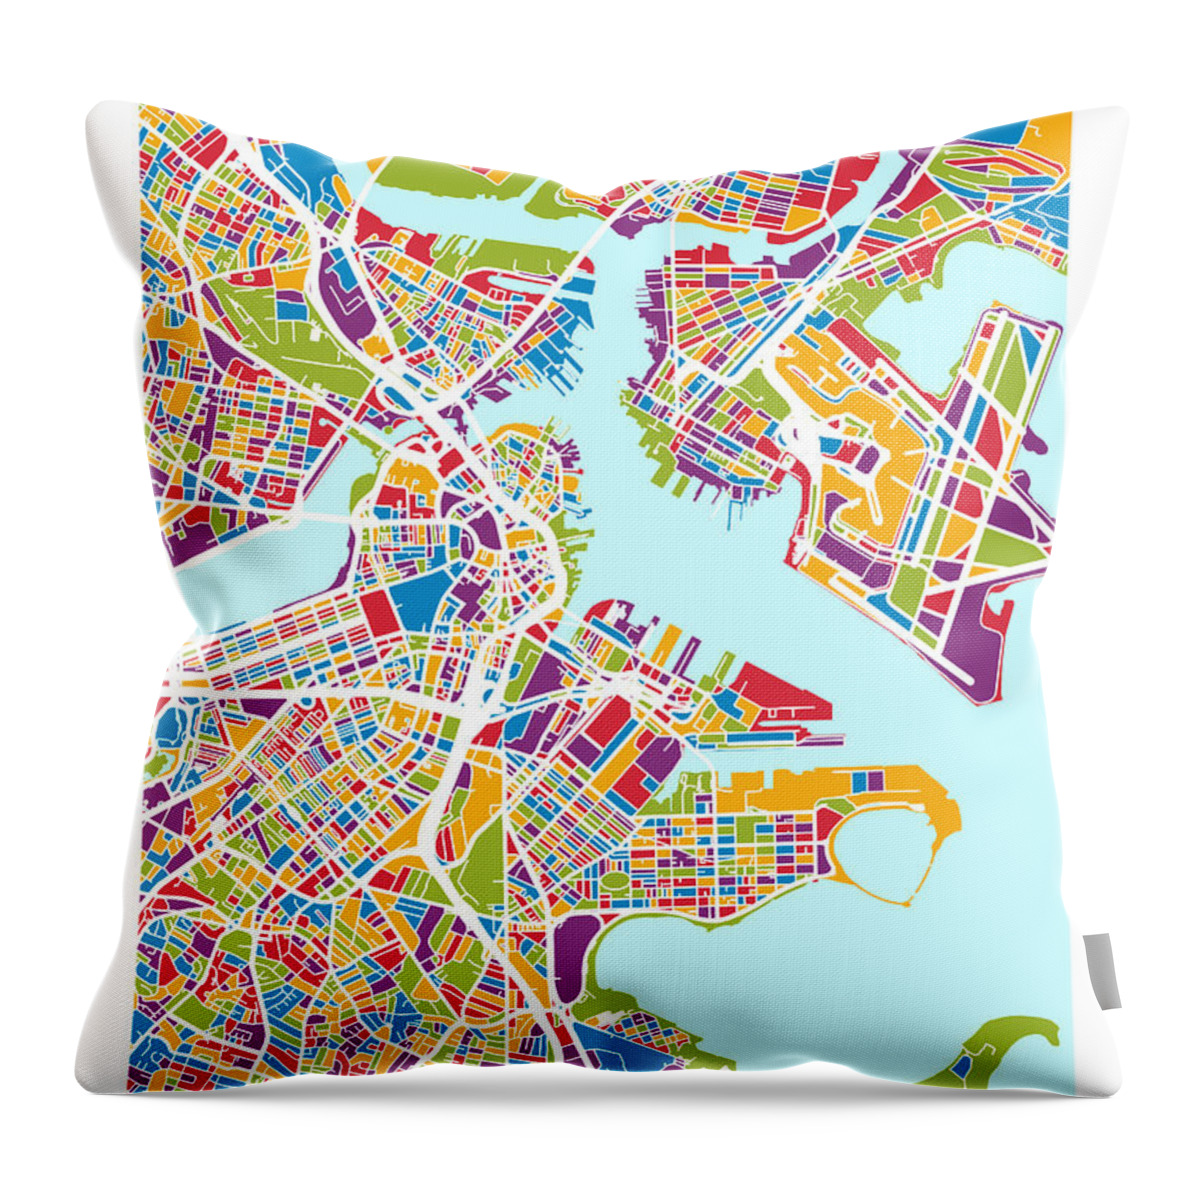 Street Map Throw Pillow featuring the digital art Boston Massachusetts Street Map by Michael Tompsett